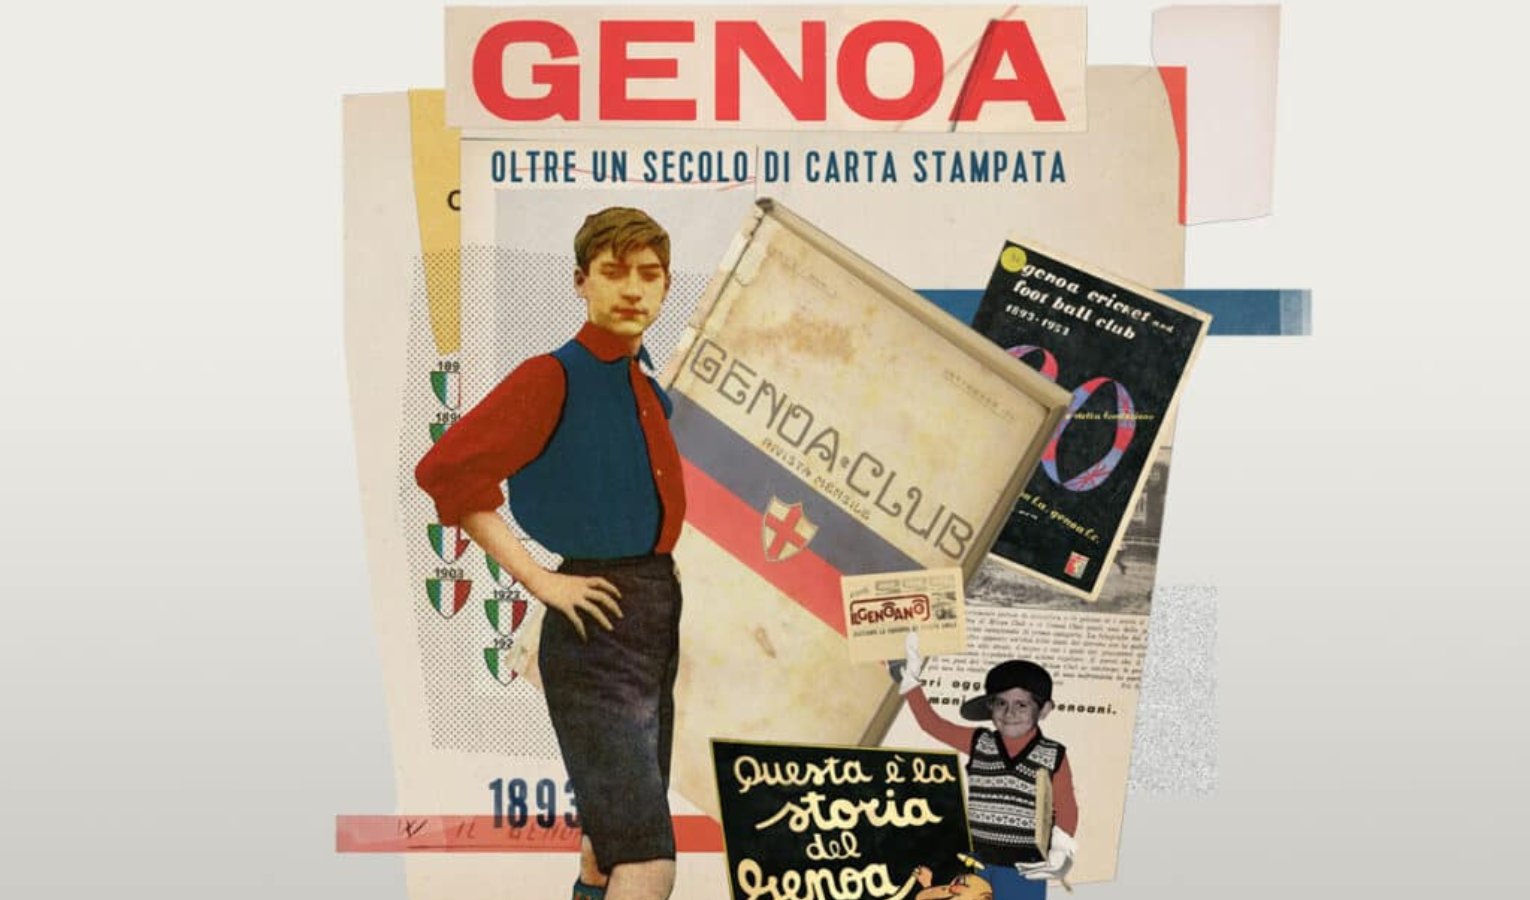 Genoa, oltre un secolo di carta stampata in mostra alla Berio